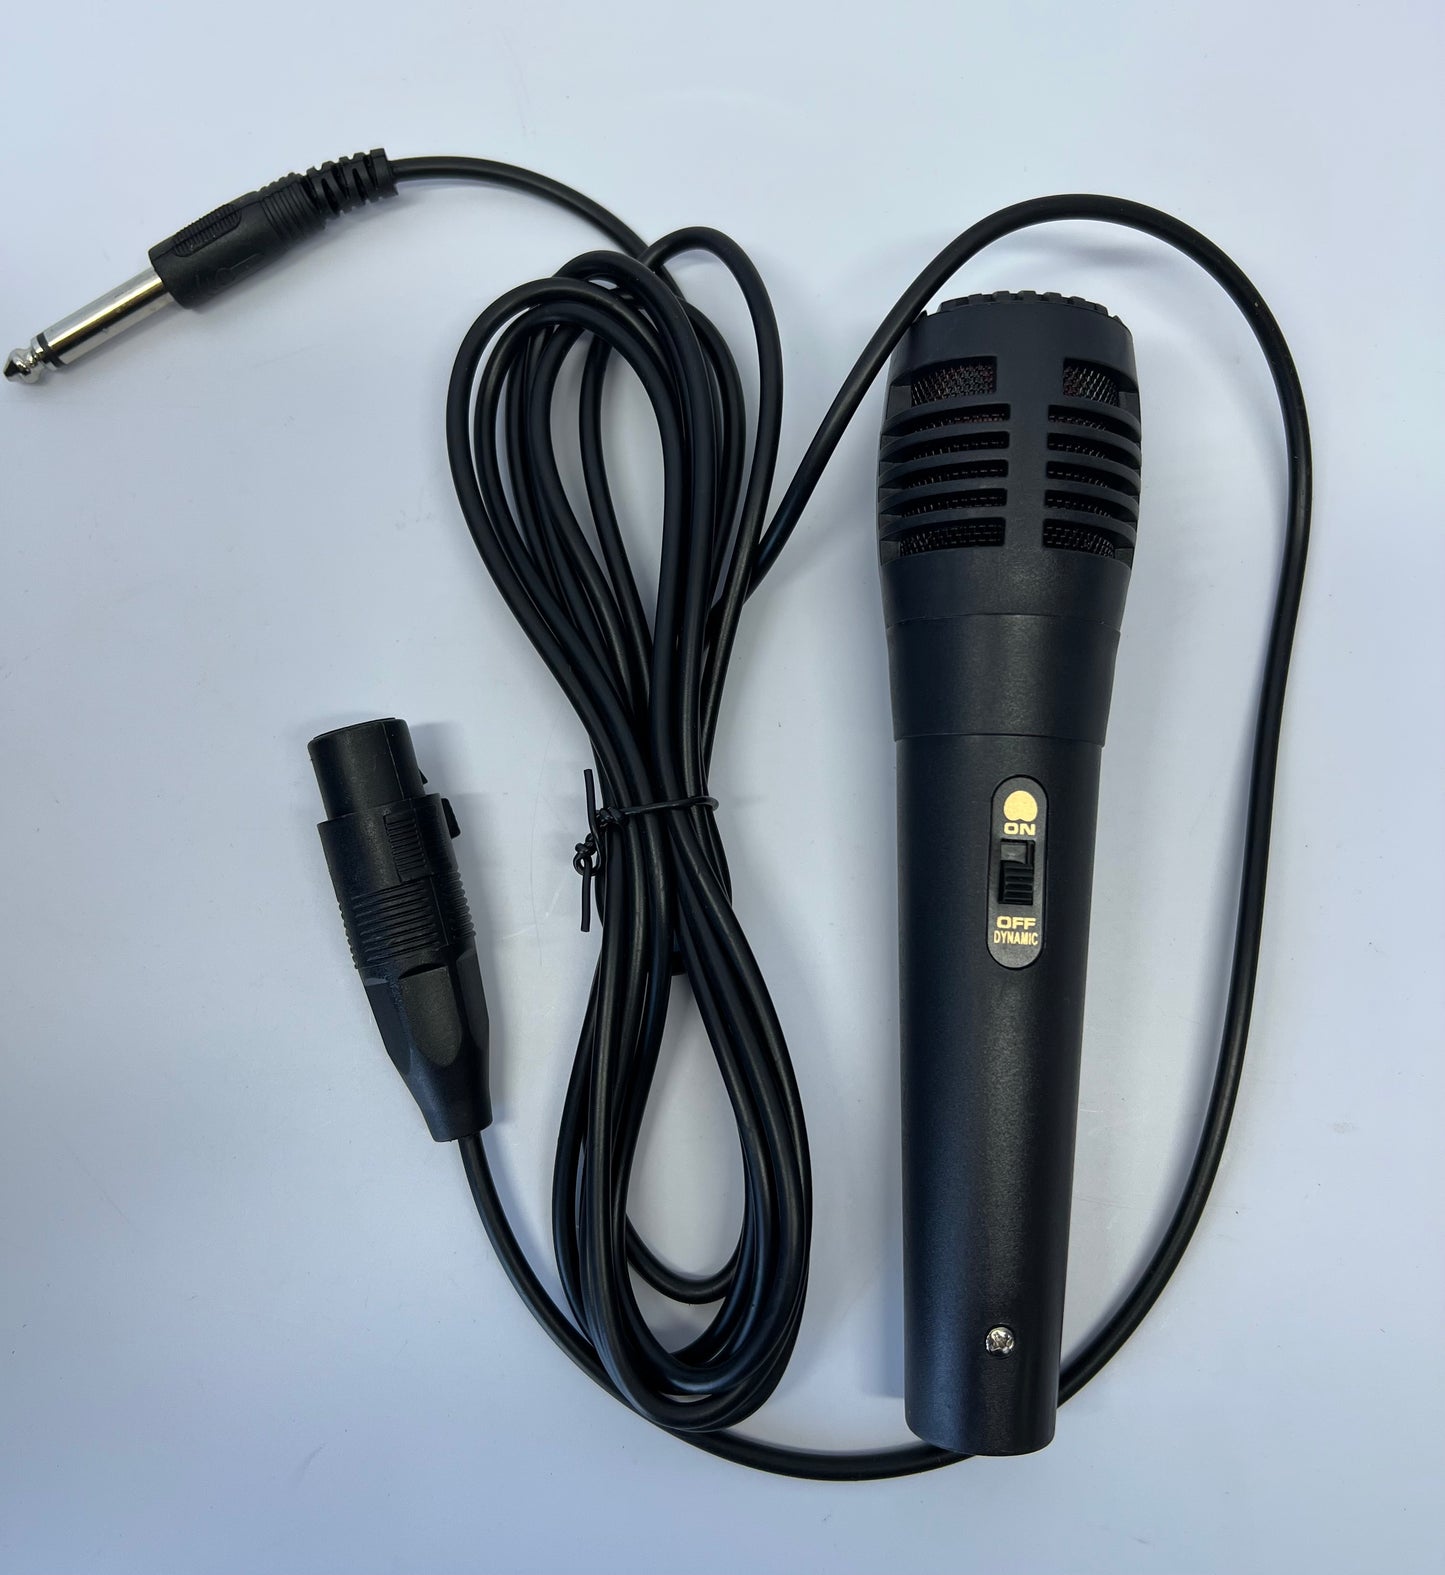 BT 2082 Speaker